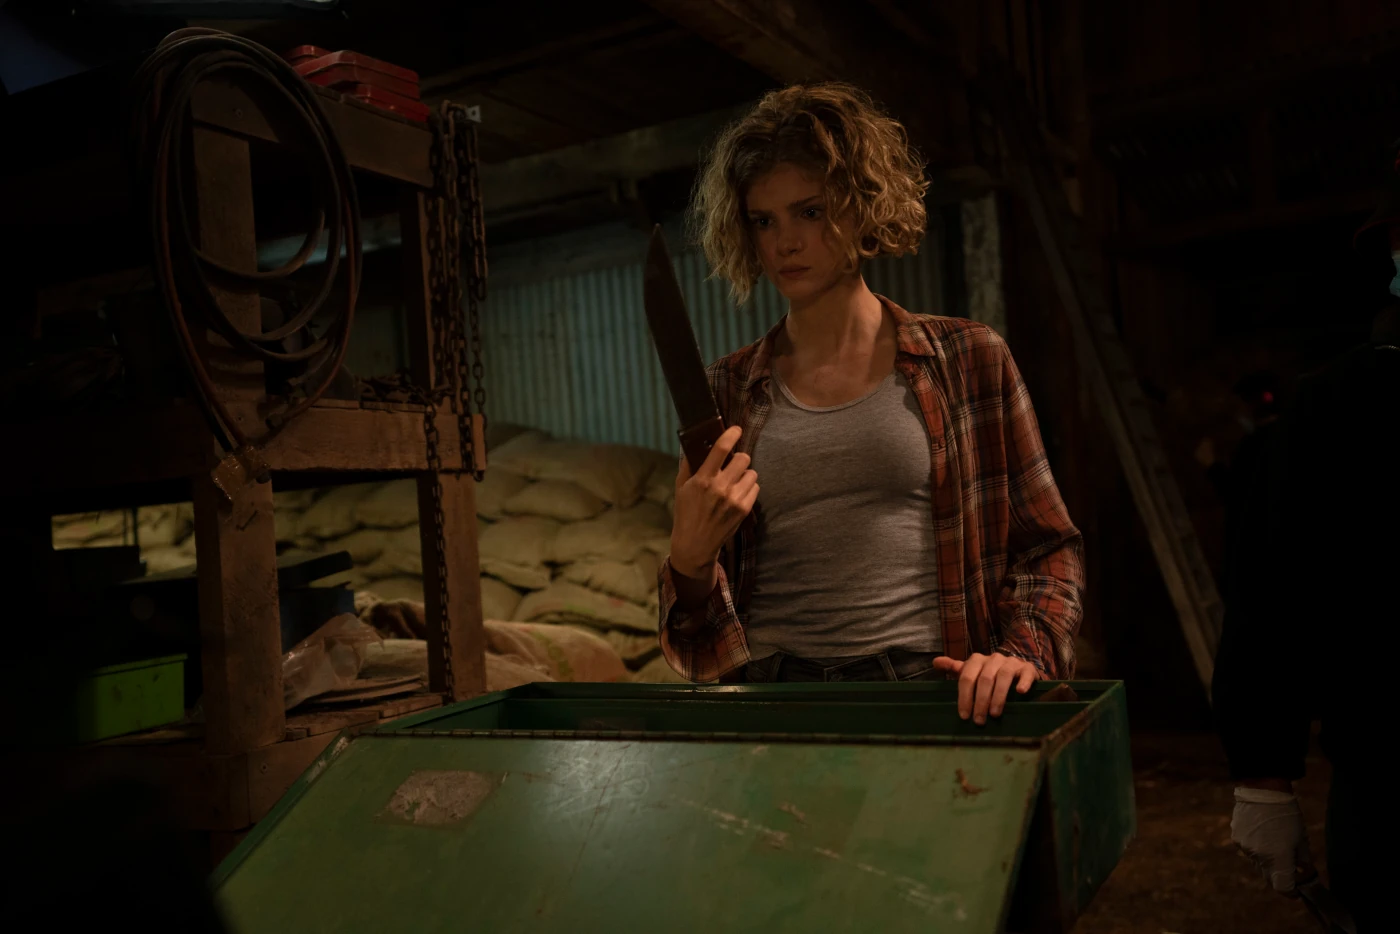 eine Frau steht in einem Lagerraum vor einer geöffneten Truhe, sie hält ein Messer in der Hand. Im Hintergrund stapeln sich braune Säcke, während das Licht gedimmt ist